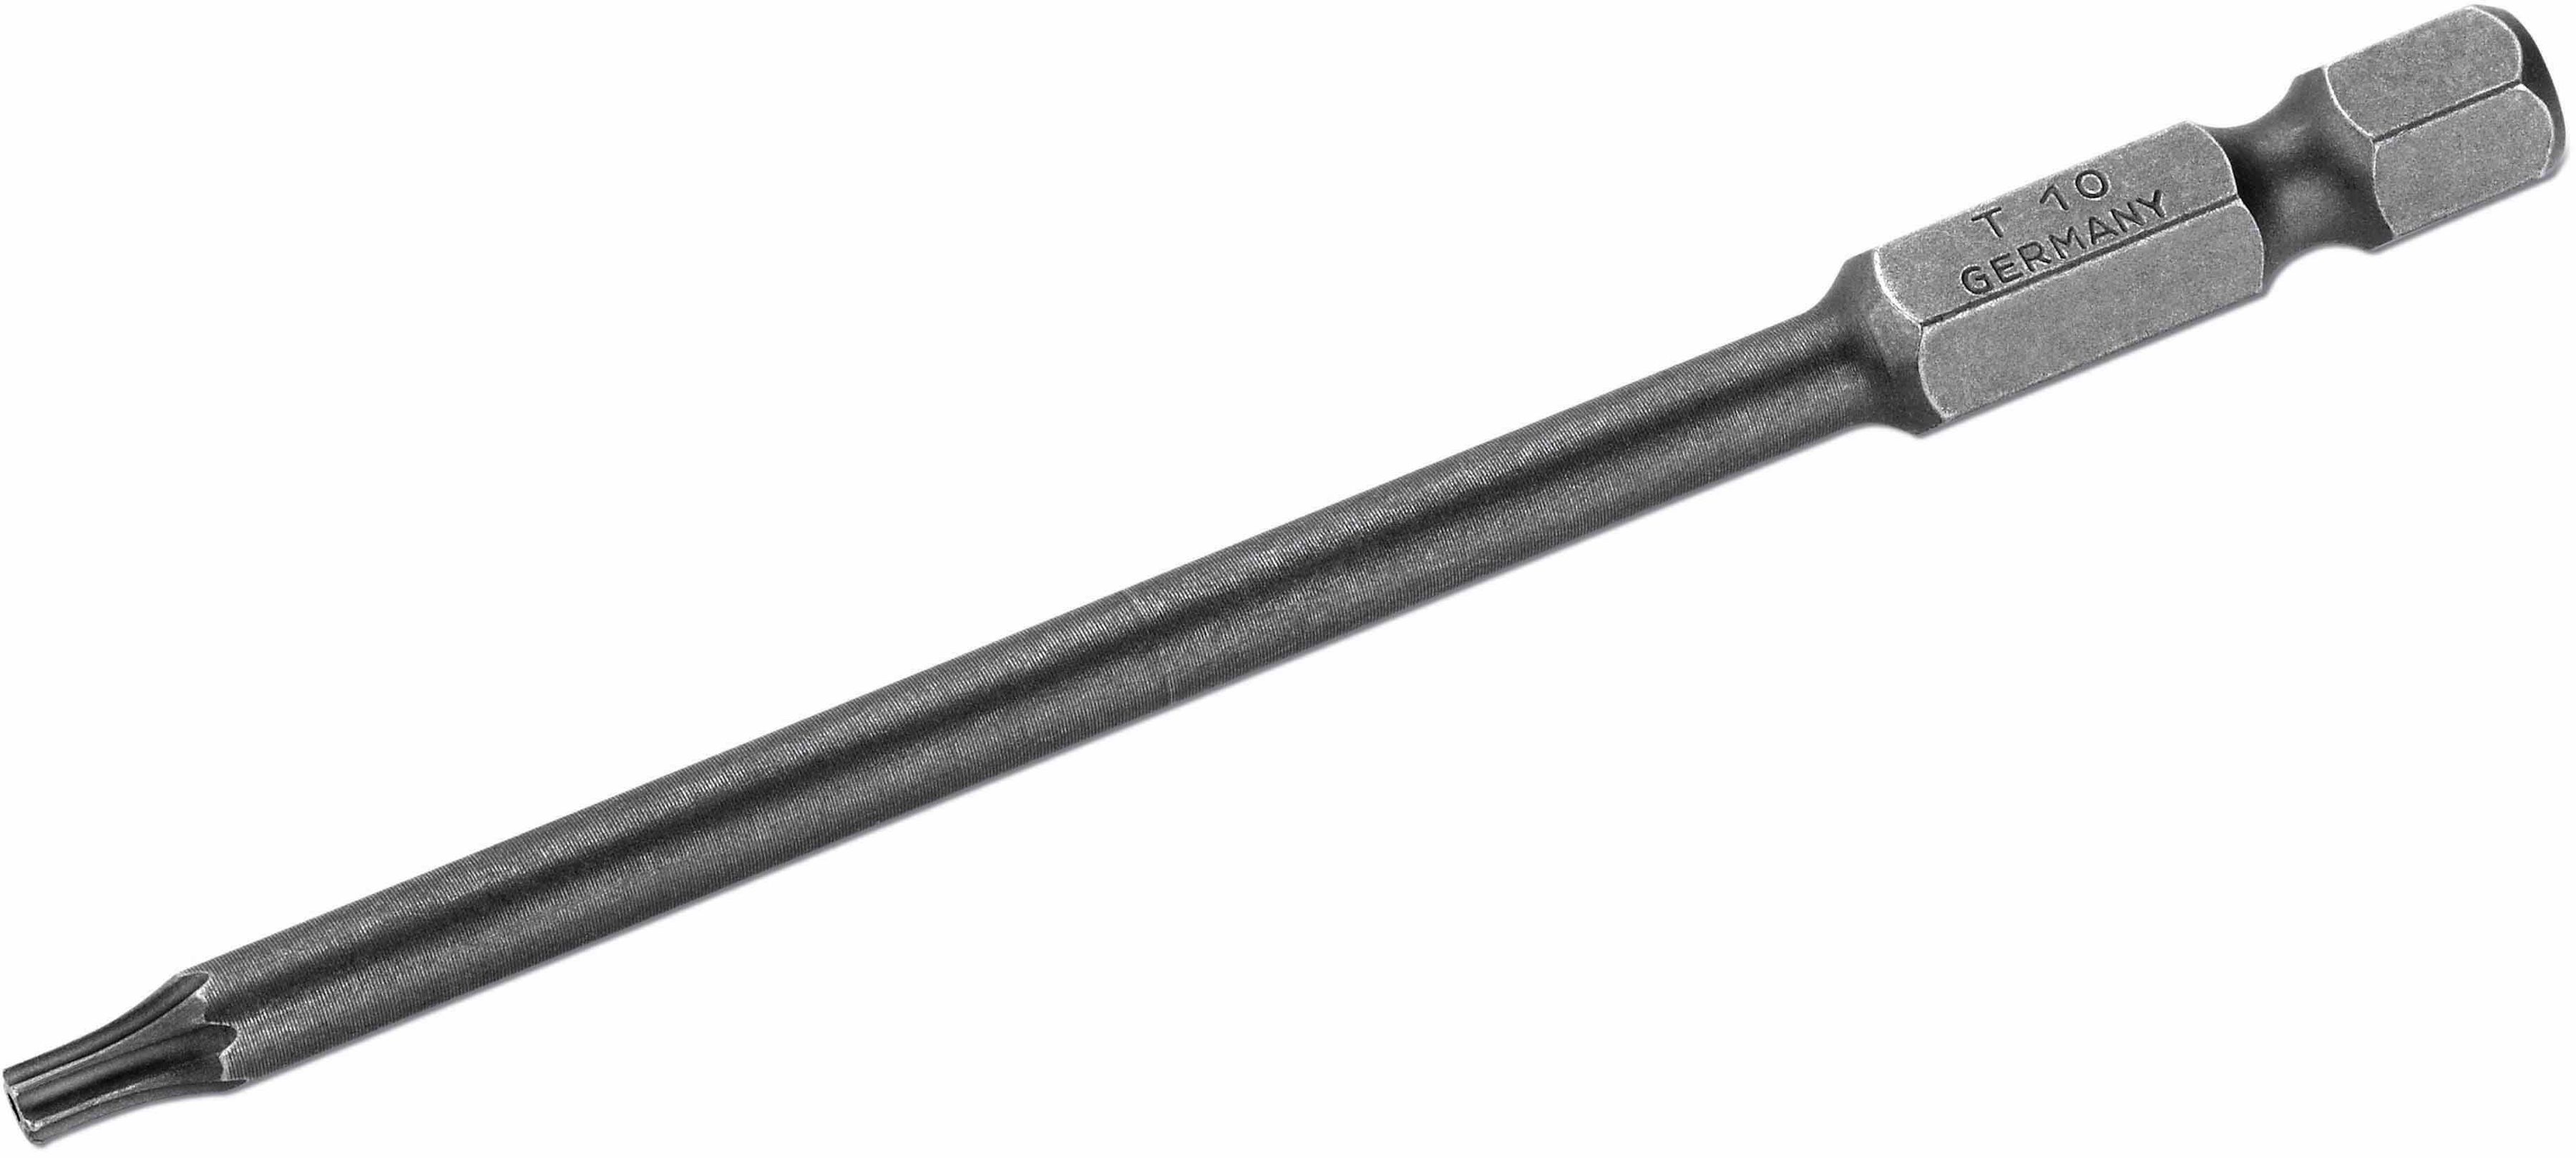 Standard Einzelbits für Torx-Schrauben Bohrung T20 Länge 90mm